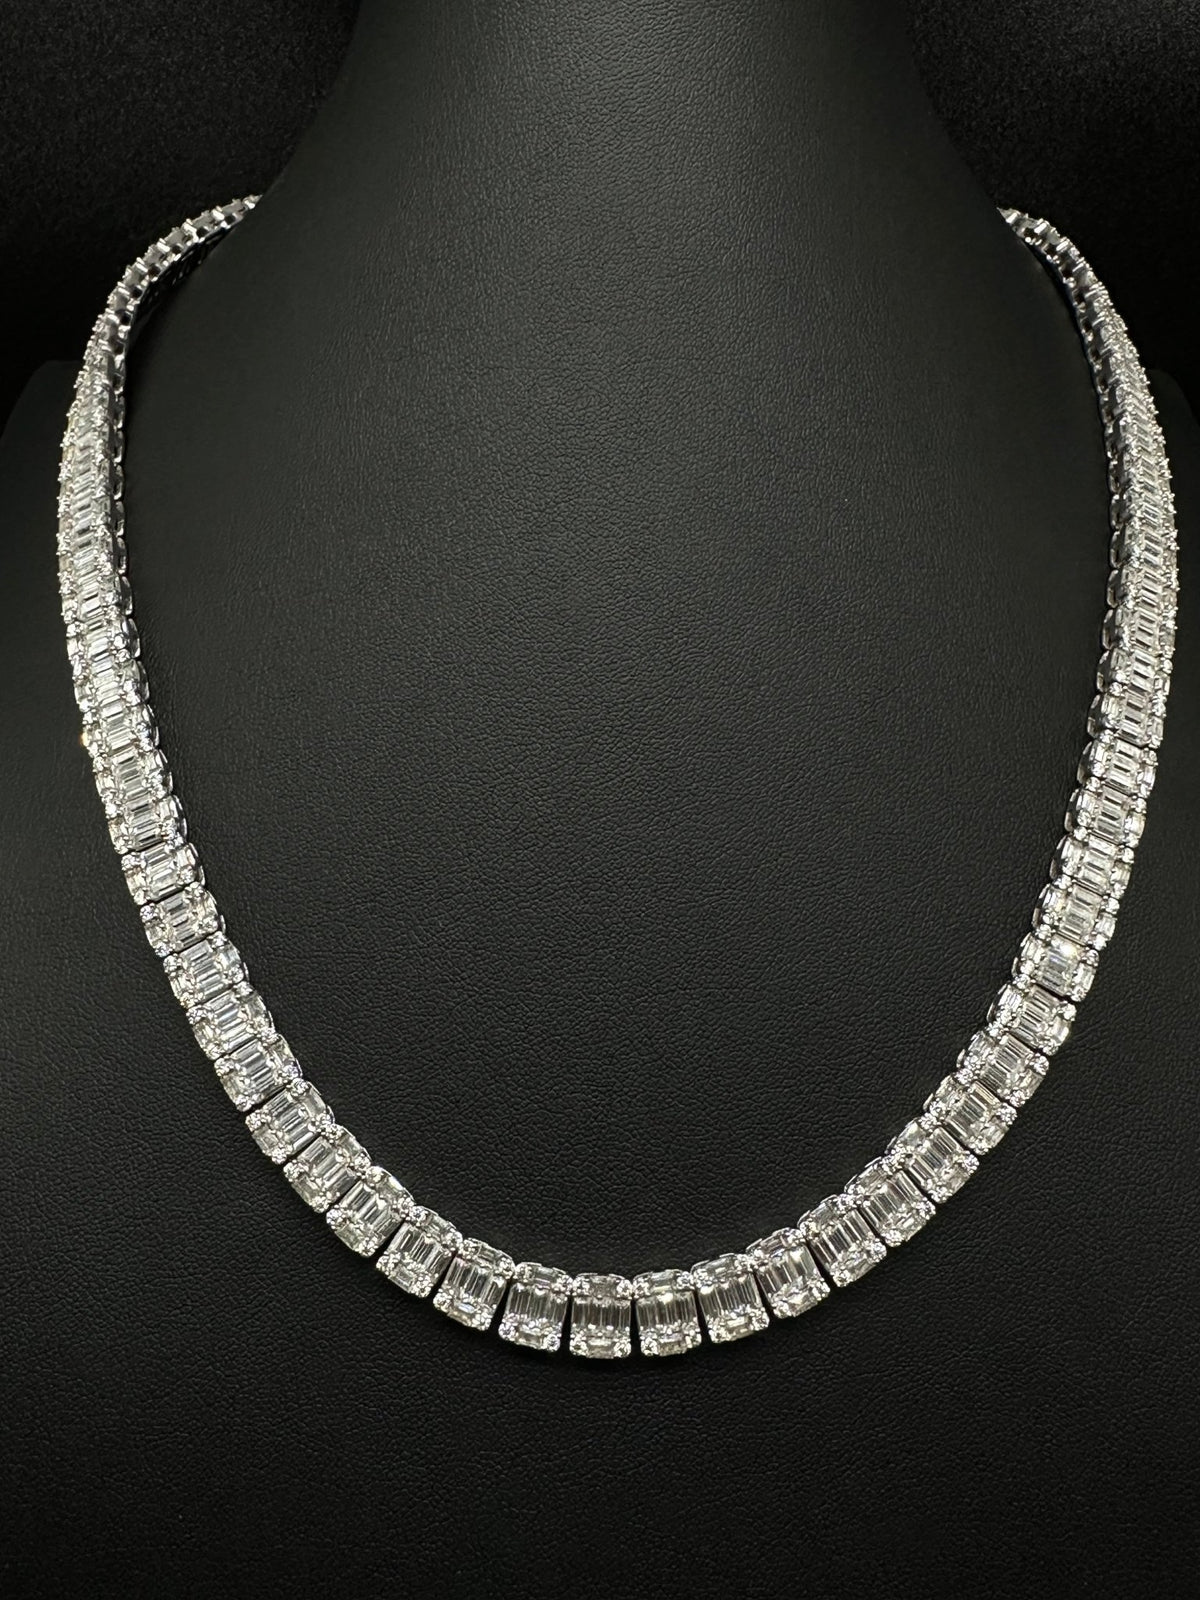 10mm Baguette Moissanite Tennis Chain (V2) - The Real Jewelry CompanyThe Real Jewelry CompanyNecklaces